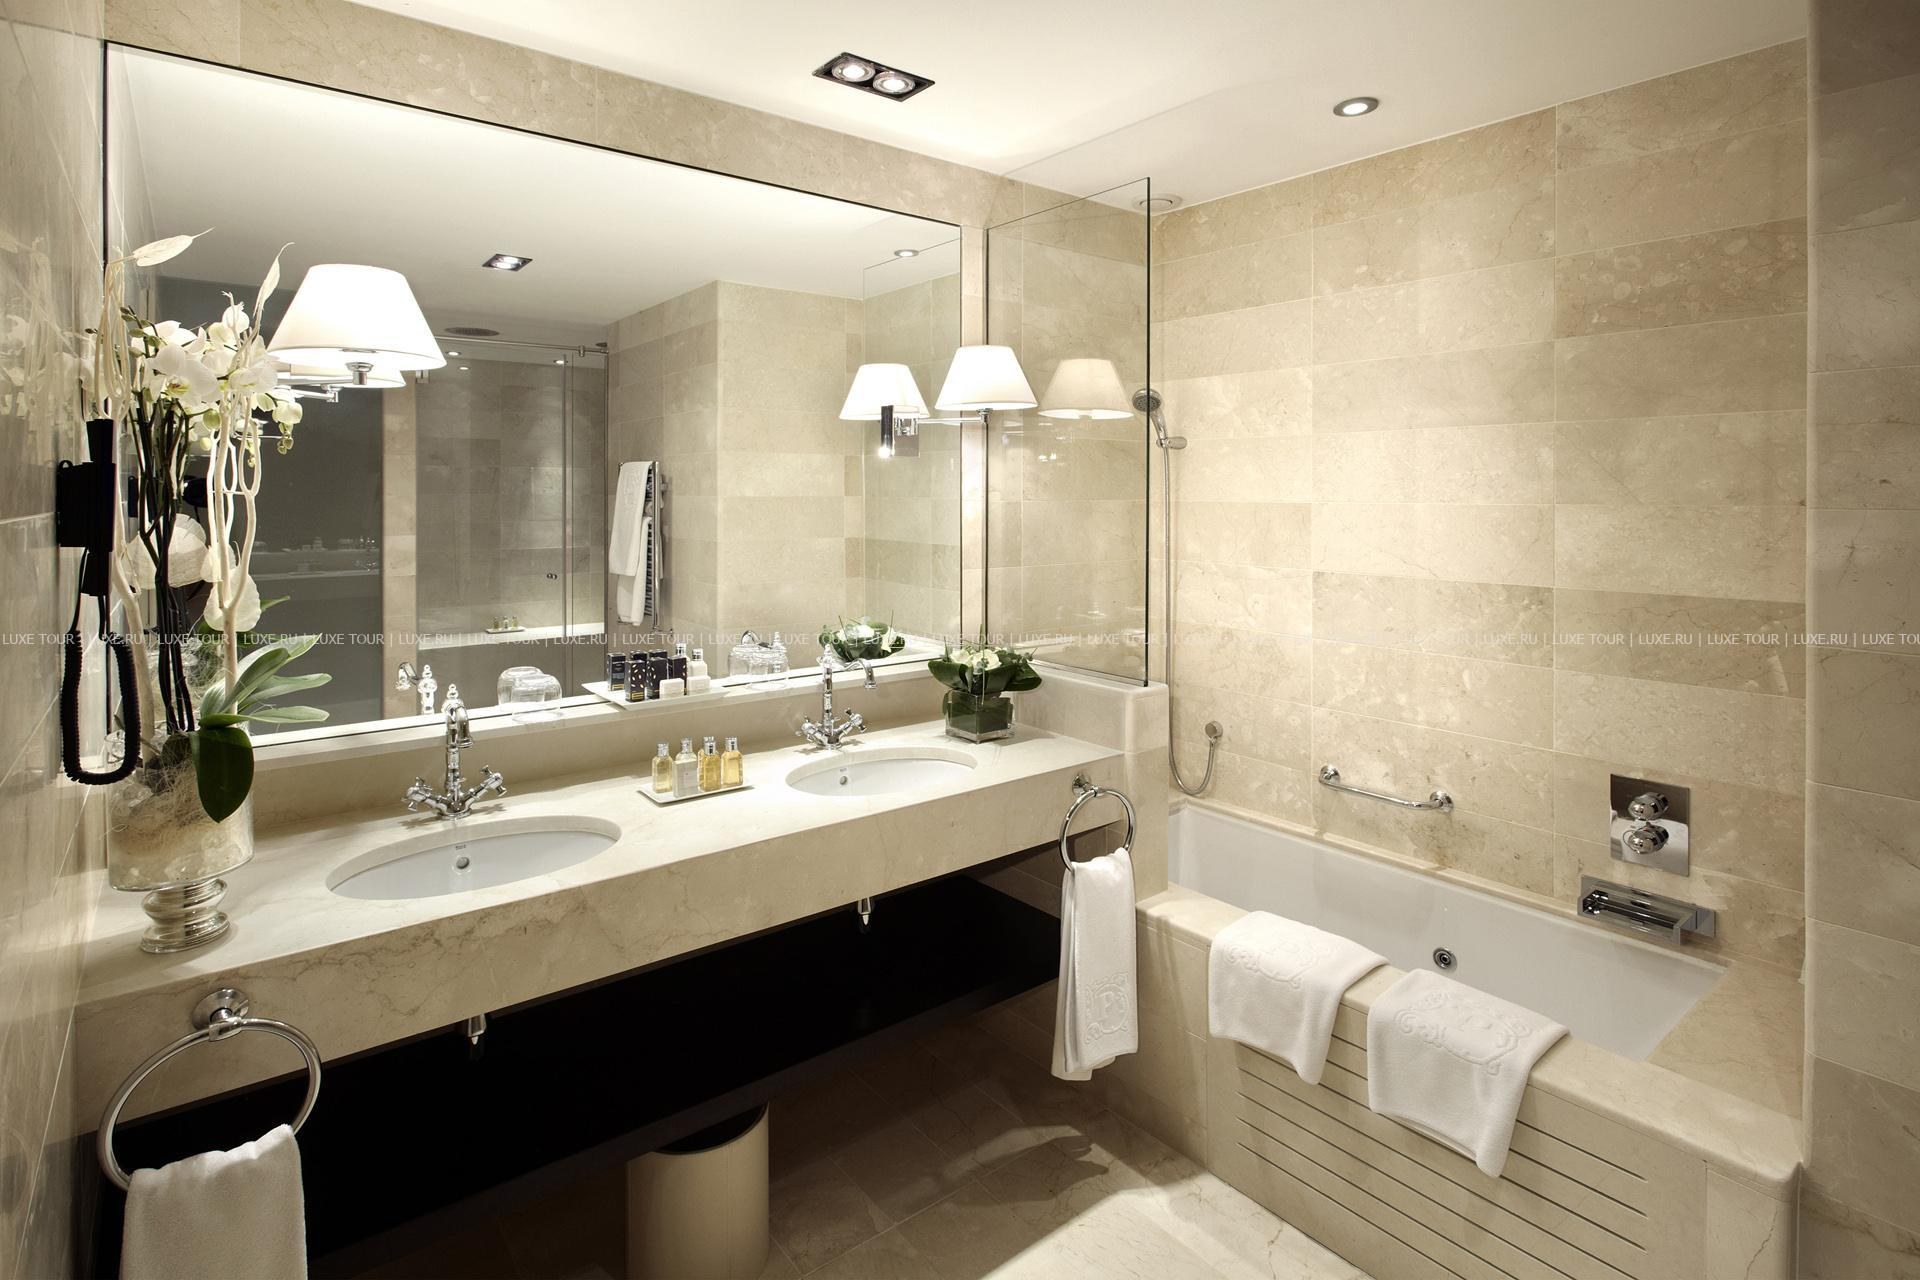 Решения для ванной комнаты, вдохновленные интерьерами отелей | ESTET